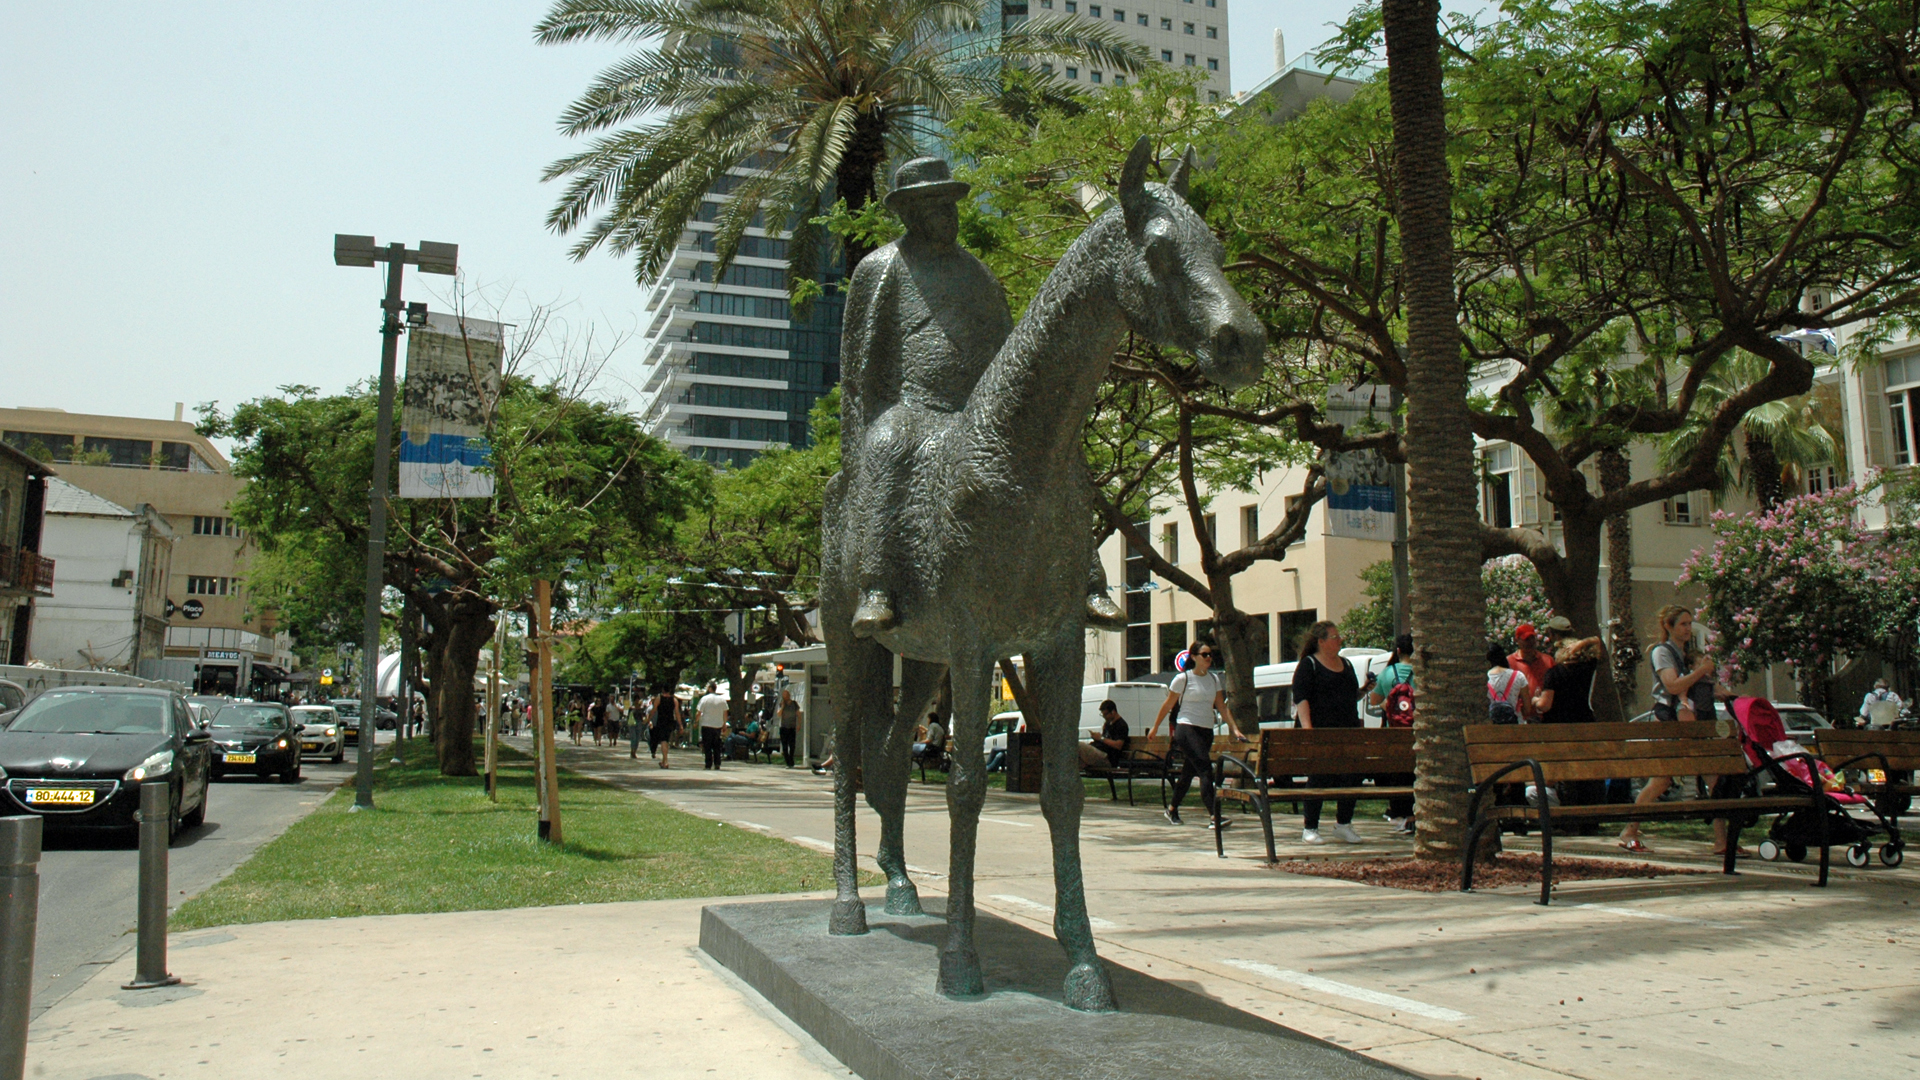 Der erste Bürgermeister Tel Avivs, Meir Dizengoff, darf über den Rothschild Boulevard reiten